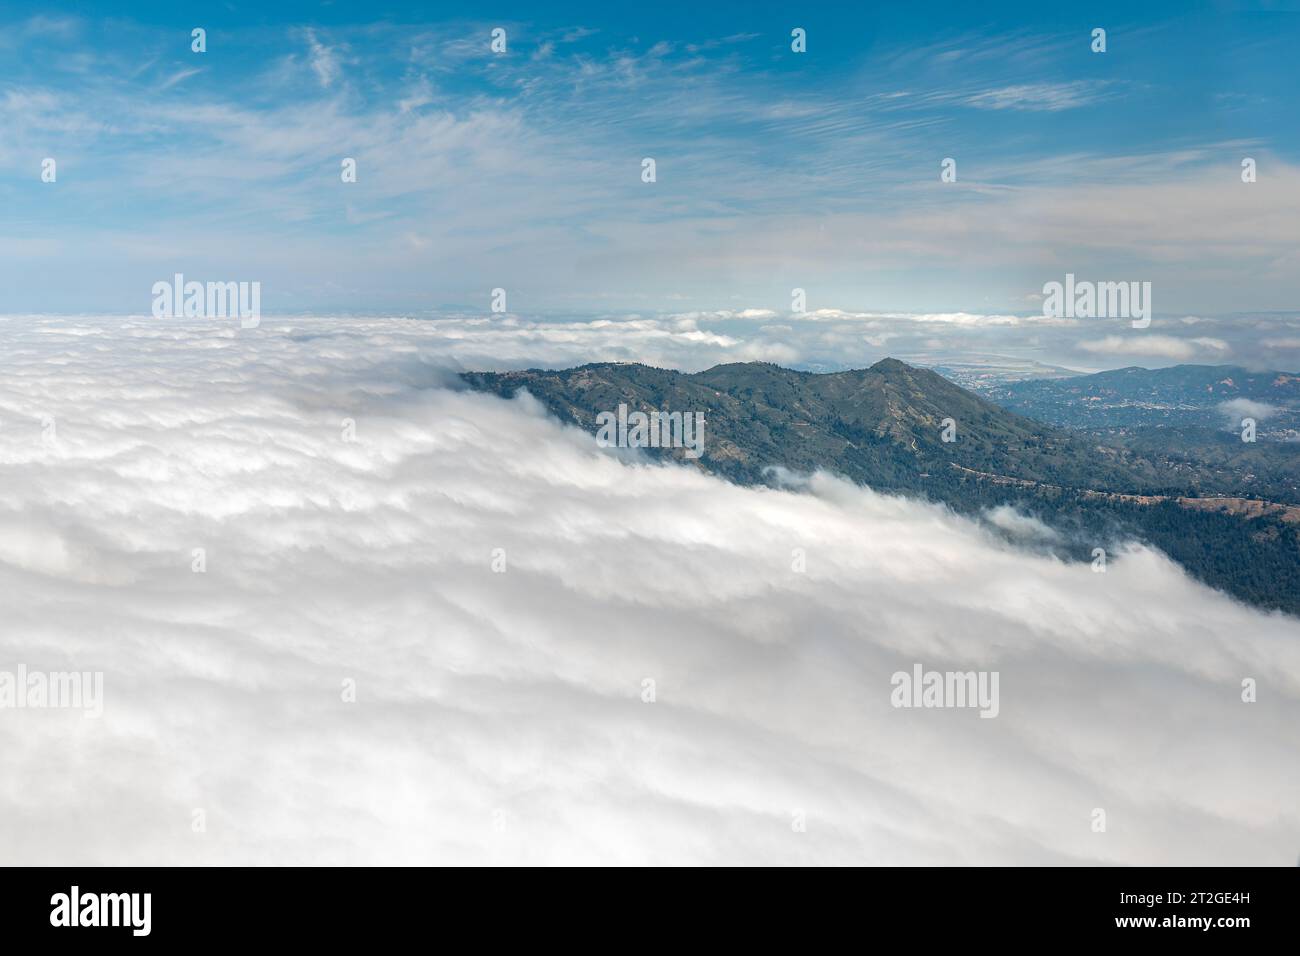 Die Wolkenbank, auch bekannt als Karl the Fog, aus der Vogelperspektive, überwindet die Landzungen von Marin und umgibt den Mount Tam Stockfoto